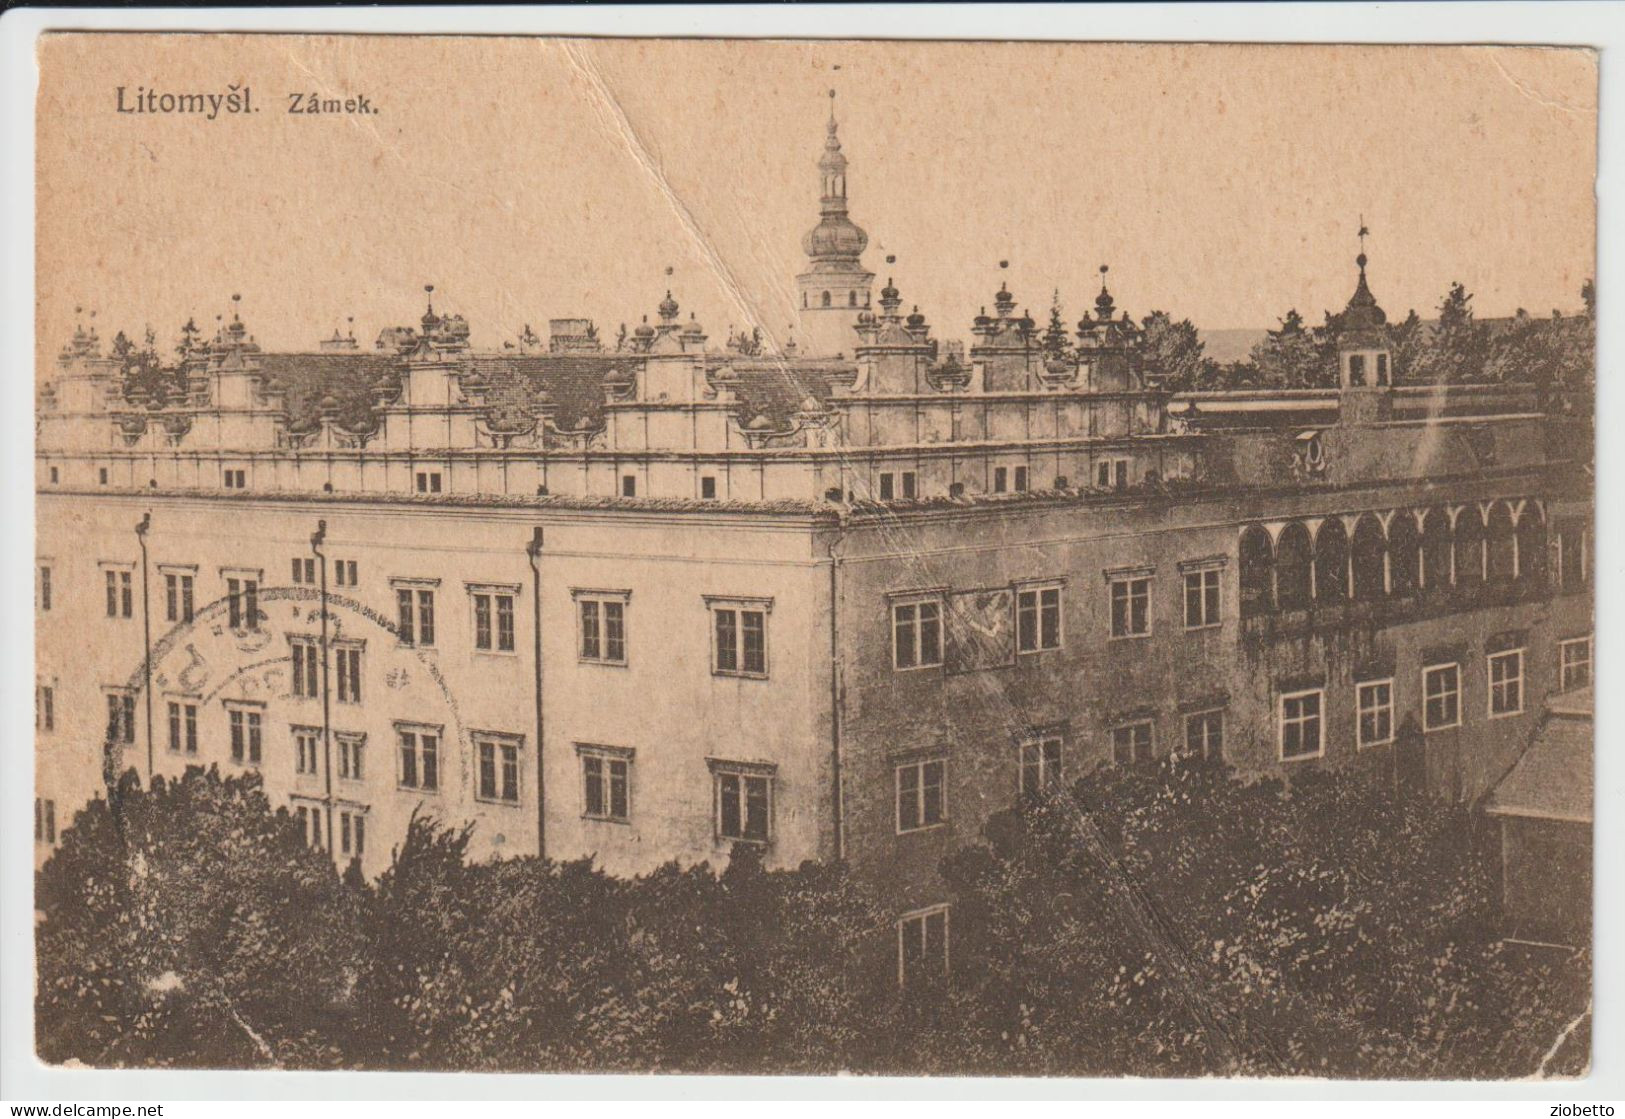 CARTOLINA DI Litomyšl - Repubblica Ceca -1923 - FORMATO PICCOLO - 2.a SCELTA - Tschechische Republik